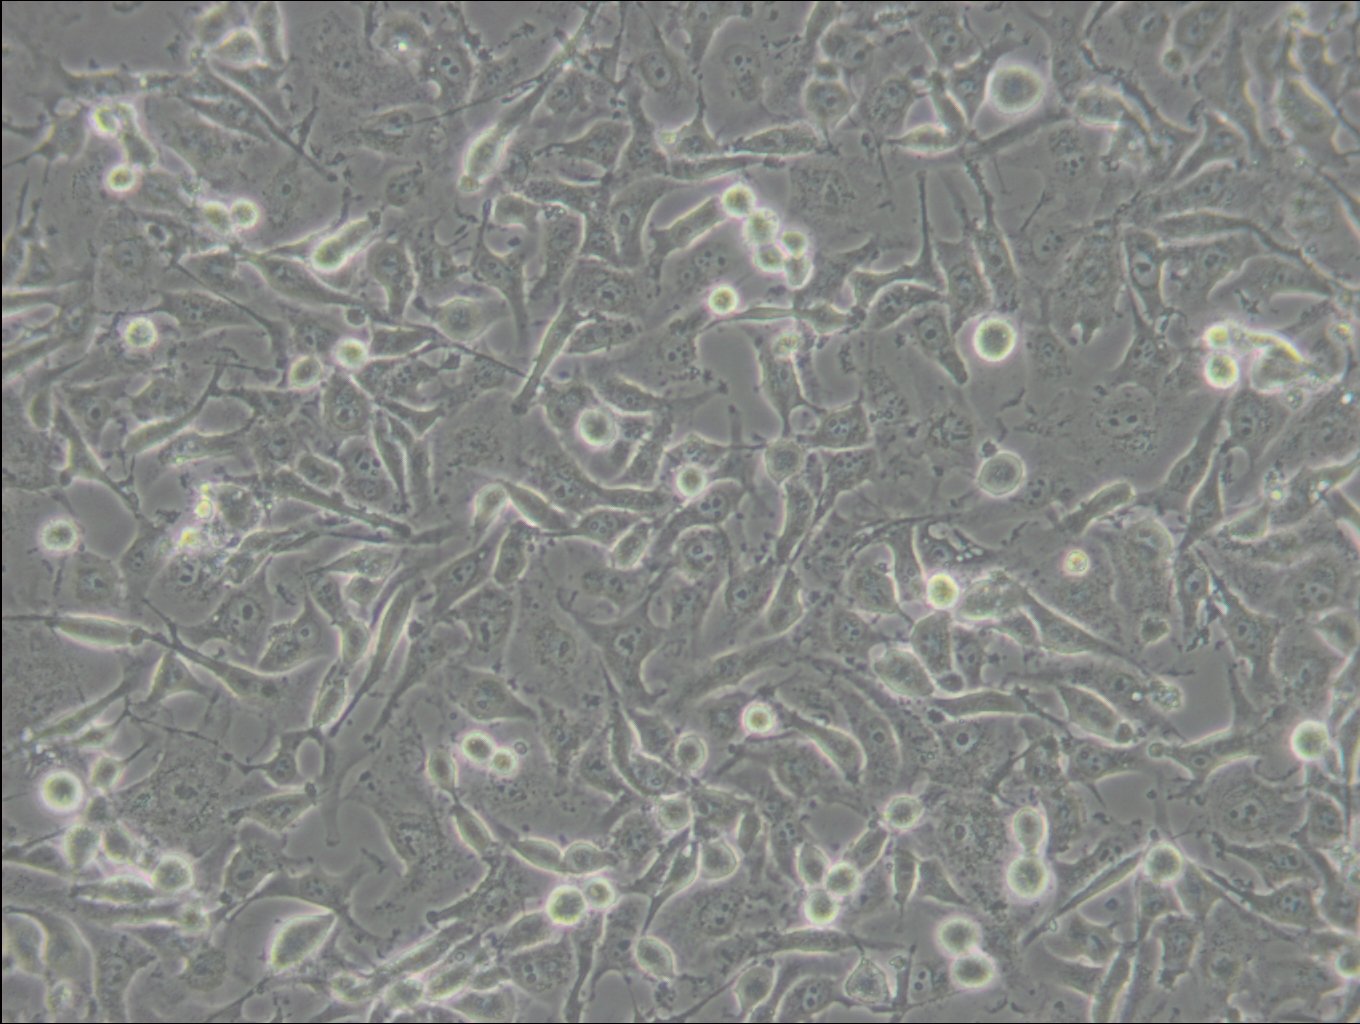 C918 Cells